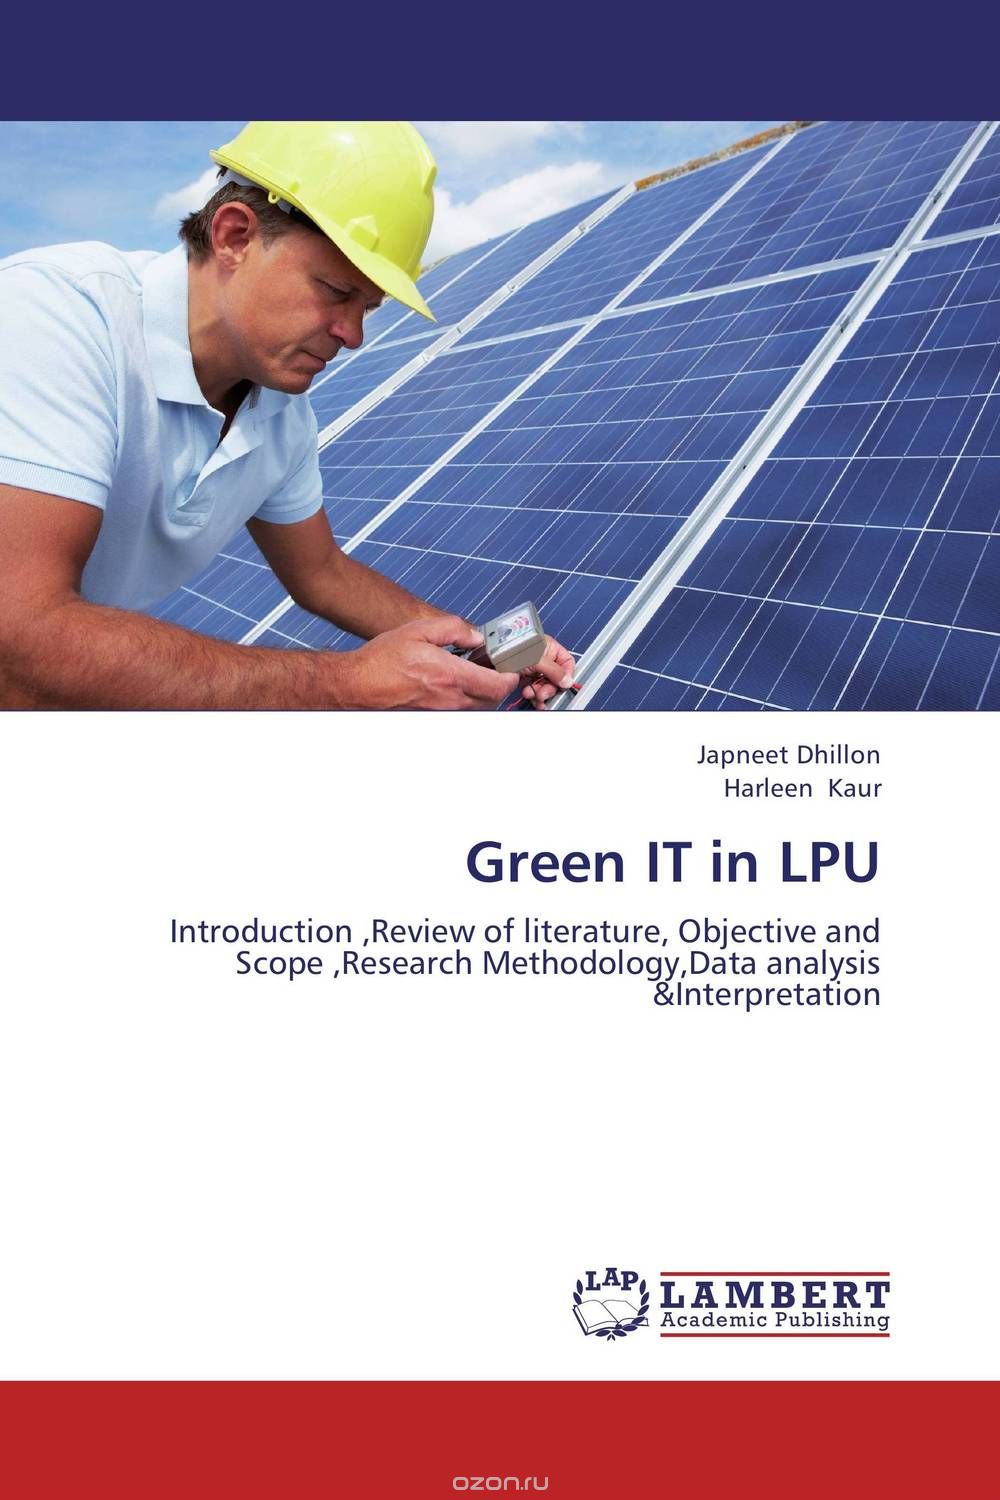 Скачать книгу "Green IT in LPU"